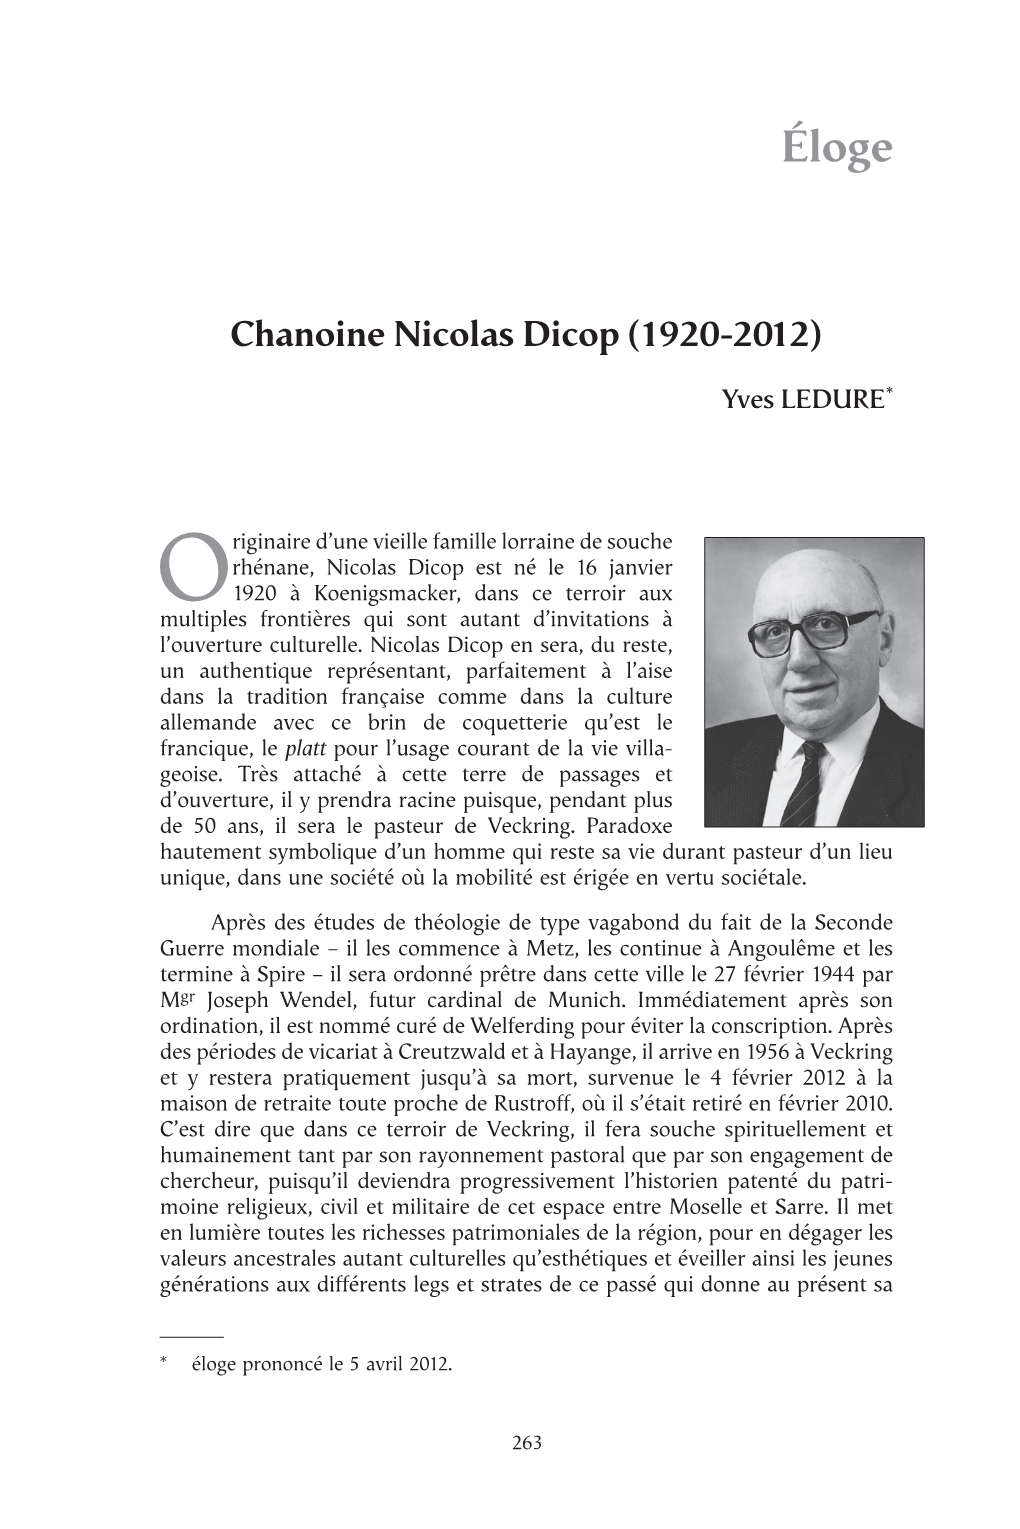 Chanoine Nicolas Dicop (1920-2012)